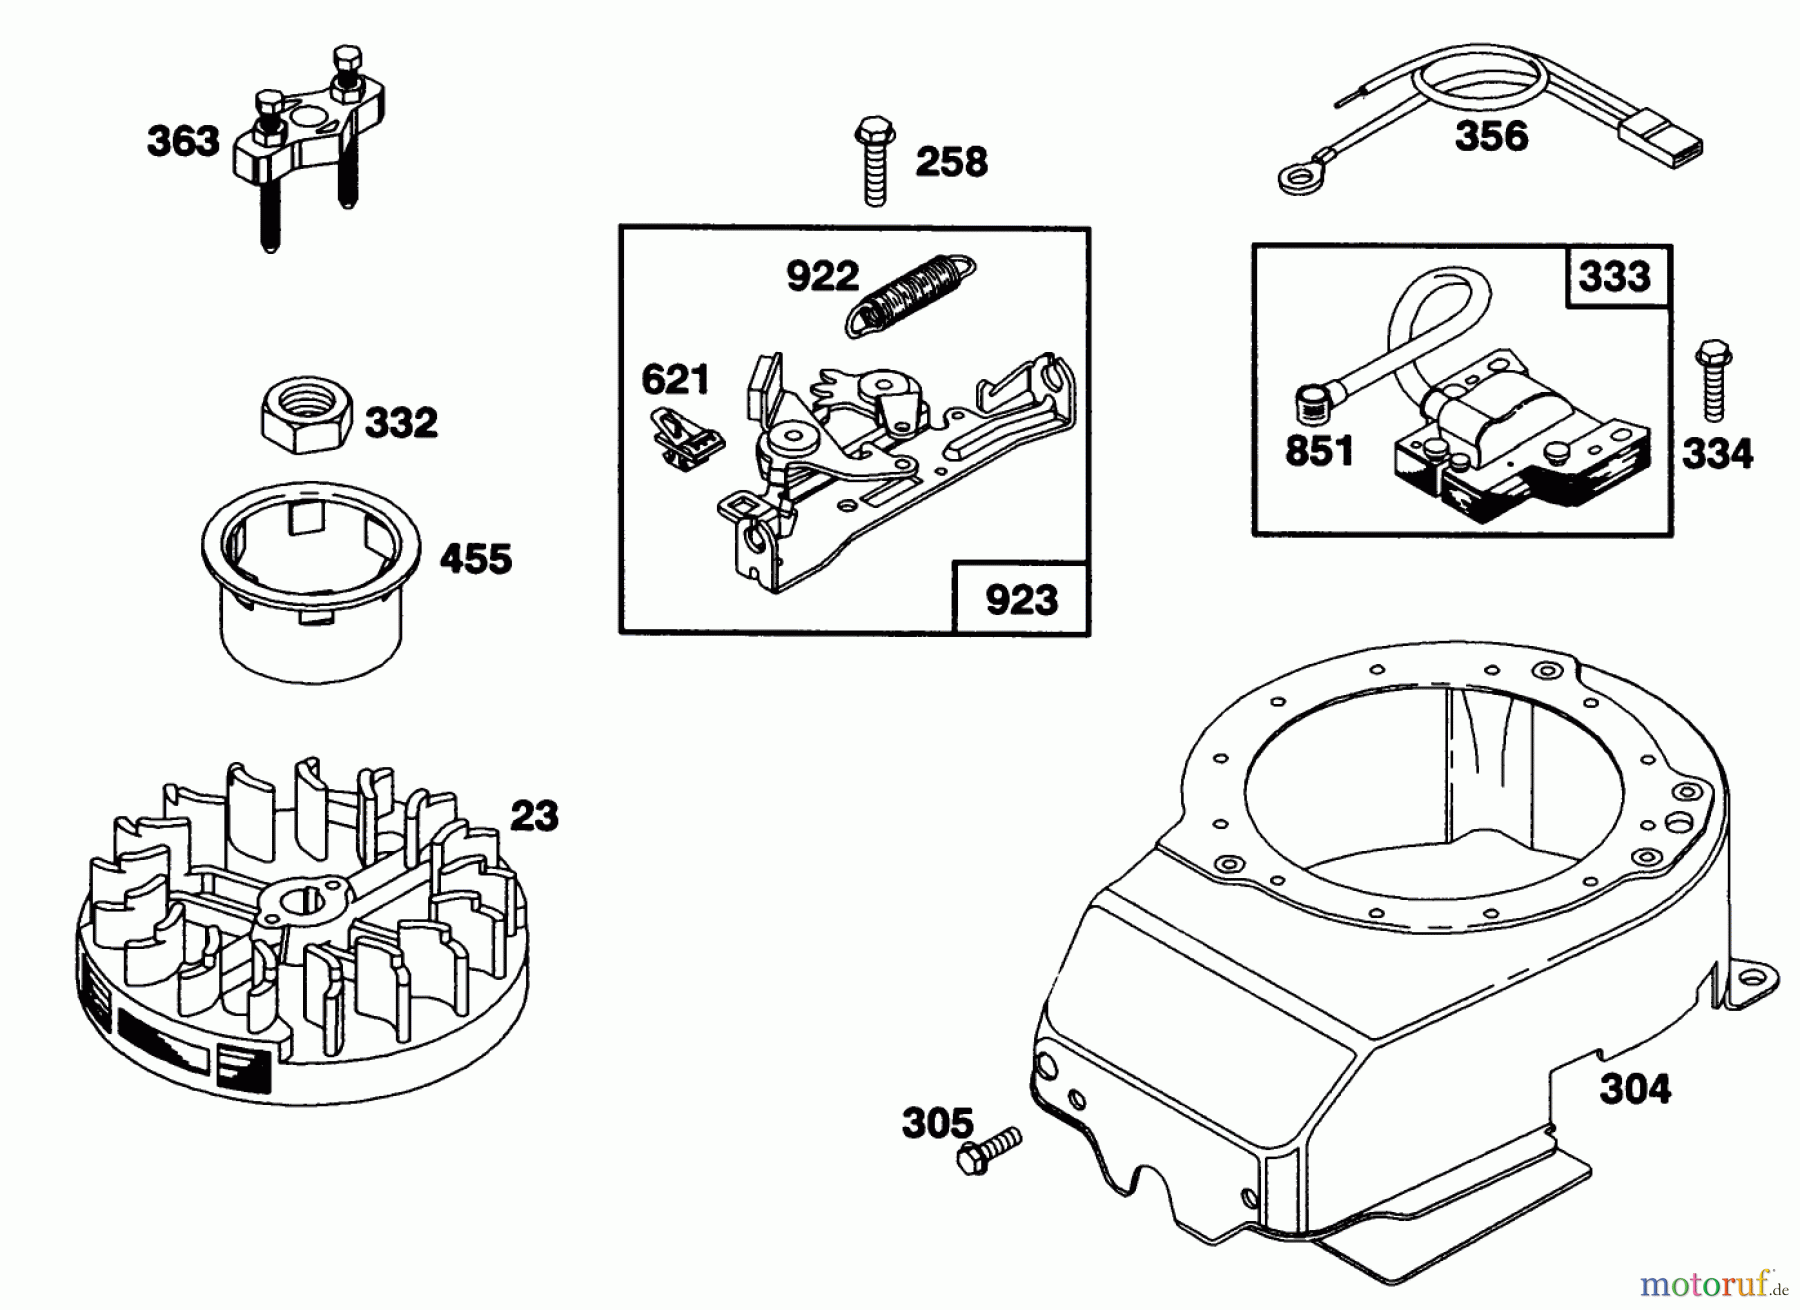  Toro Neu Mowers, Walk-Behind Seite 1 20218 - Toro Lawnmower, 1991 (1000001-1999999) ENGINE BRIGGS & STRATTON MODEL 124702-3115-01 #6